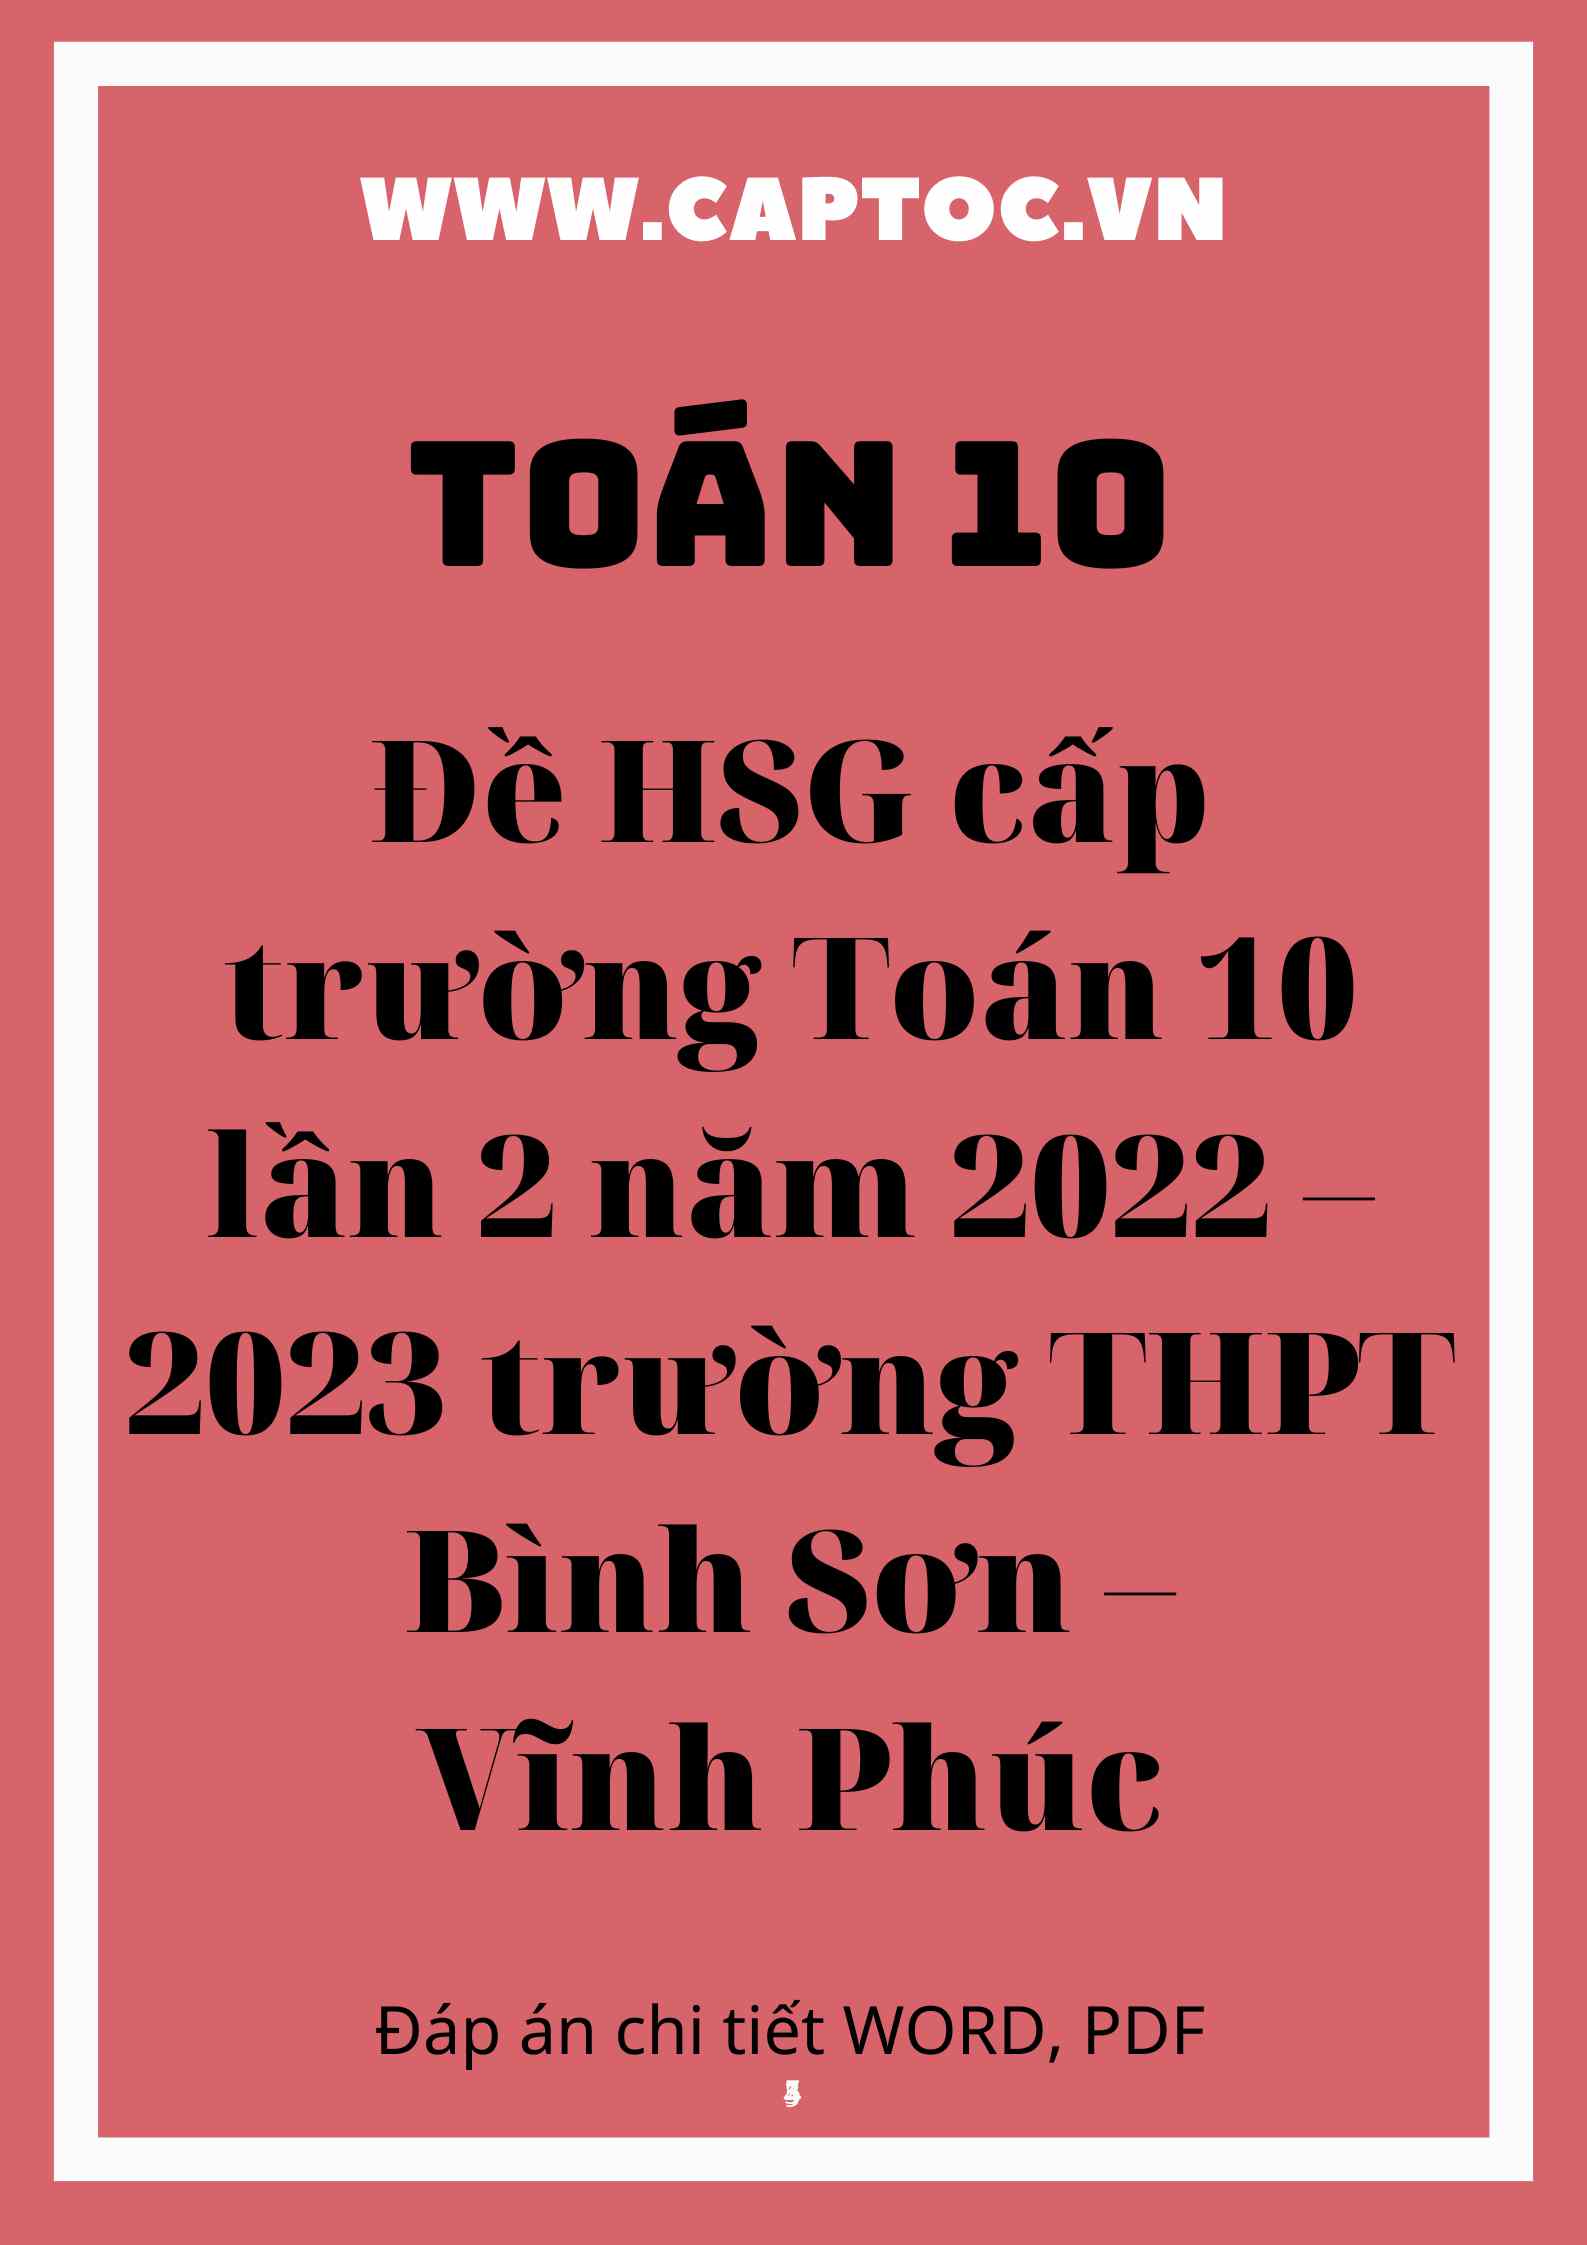 Đề HSG cấp trường Toán 10 lần 2 năm 2022 – 2023 trường THPT Bình Sơn – Vĩnh Phúc